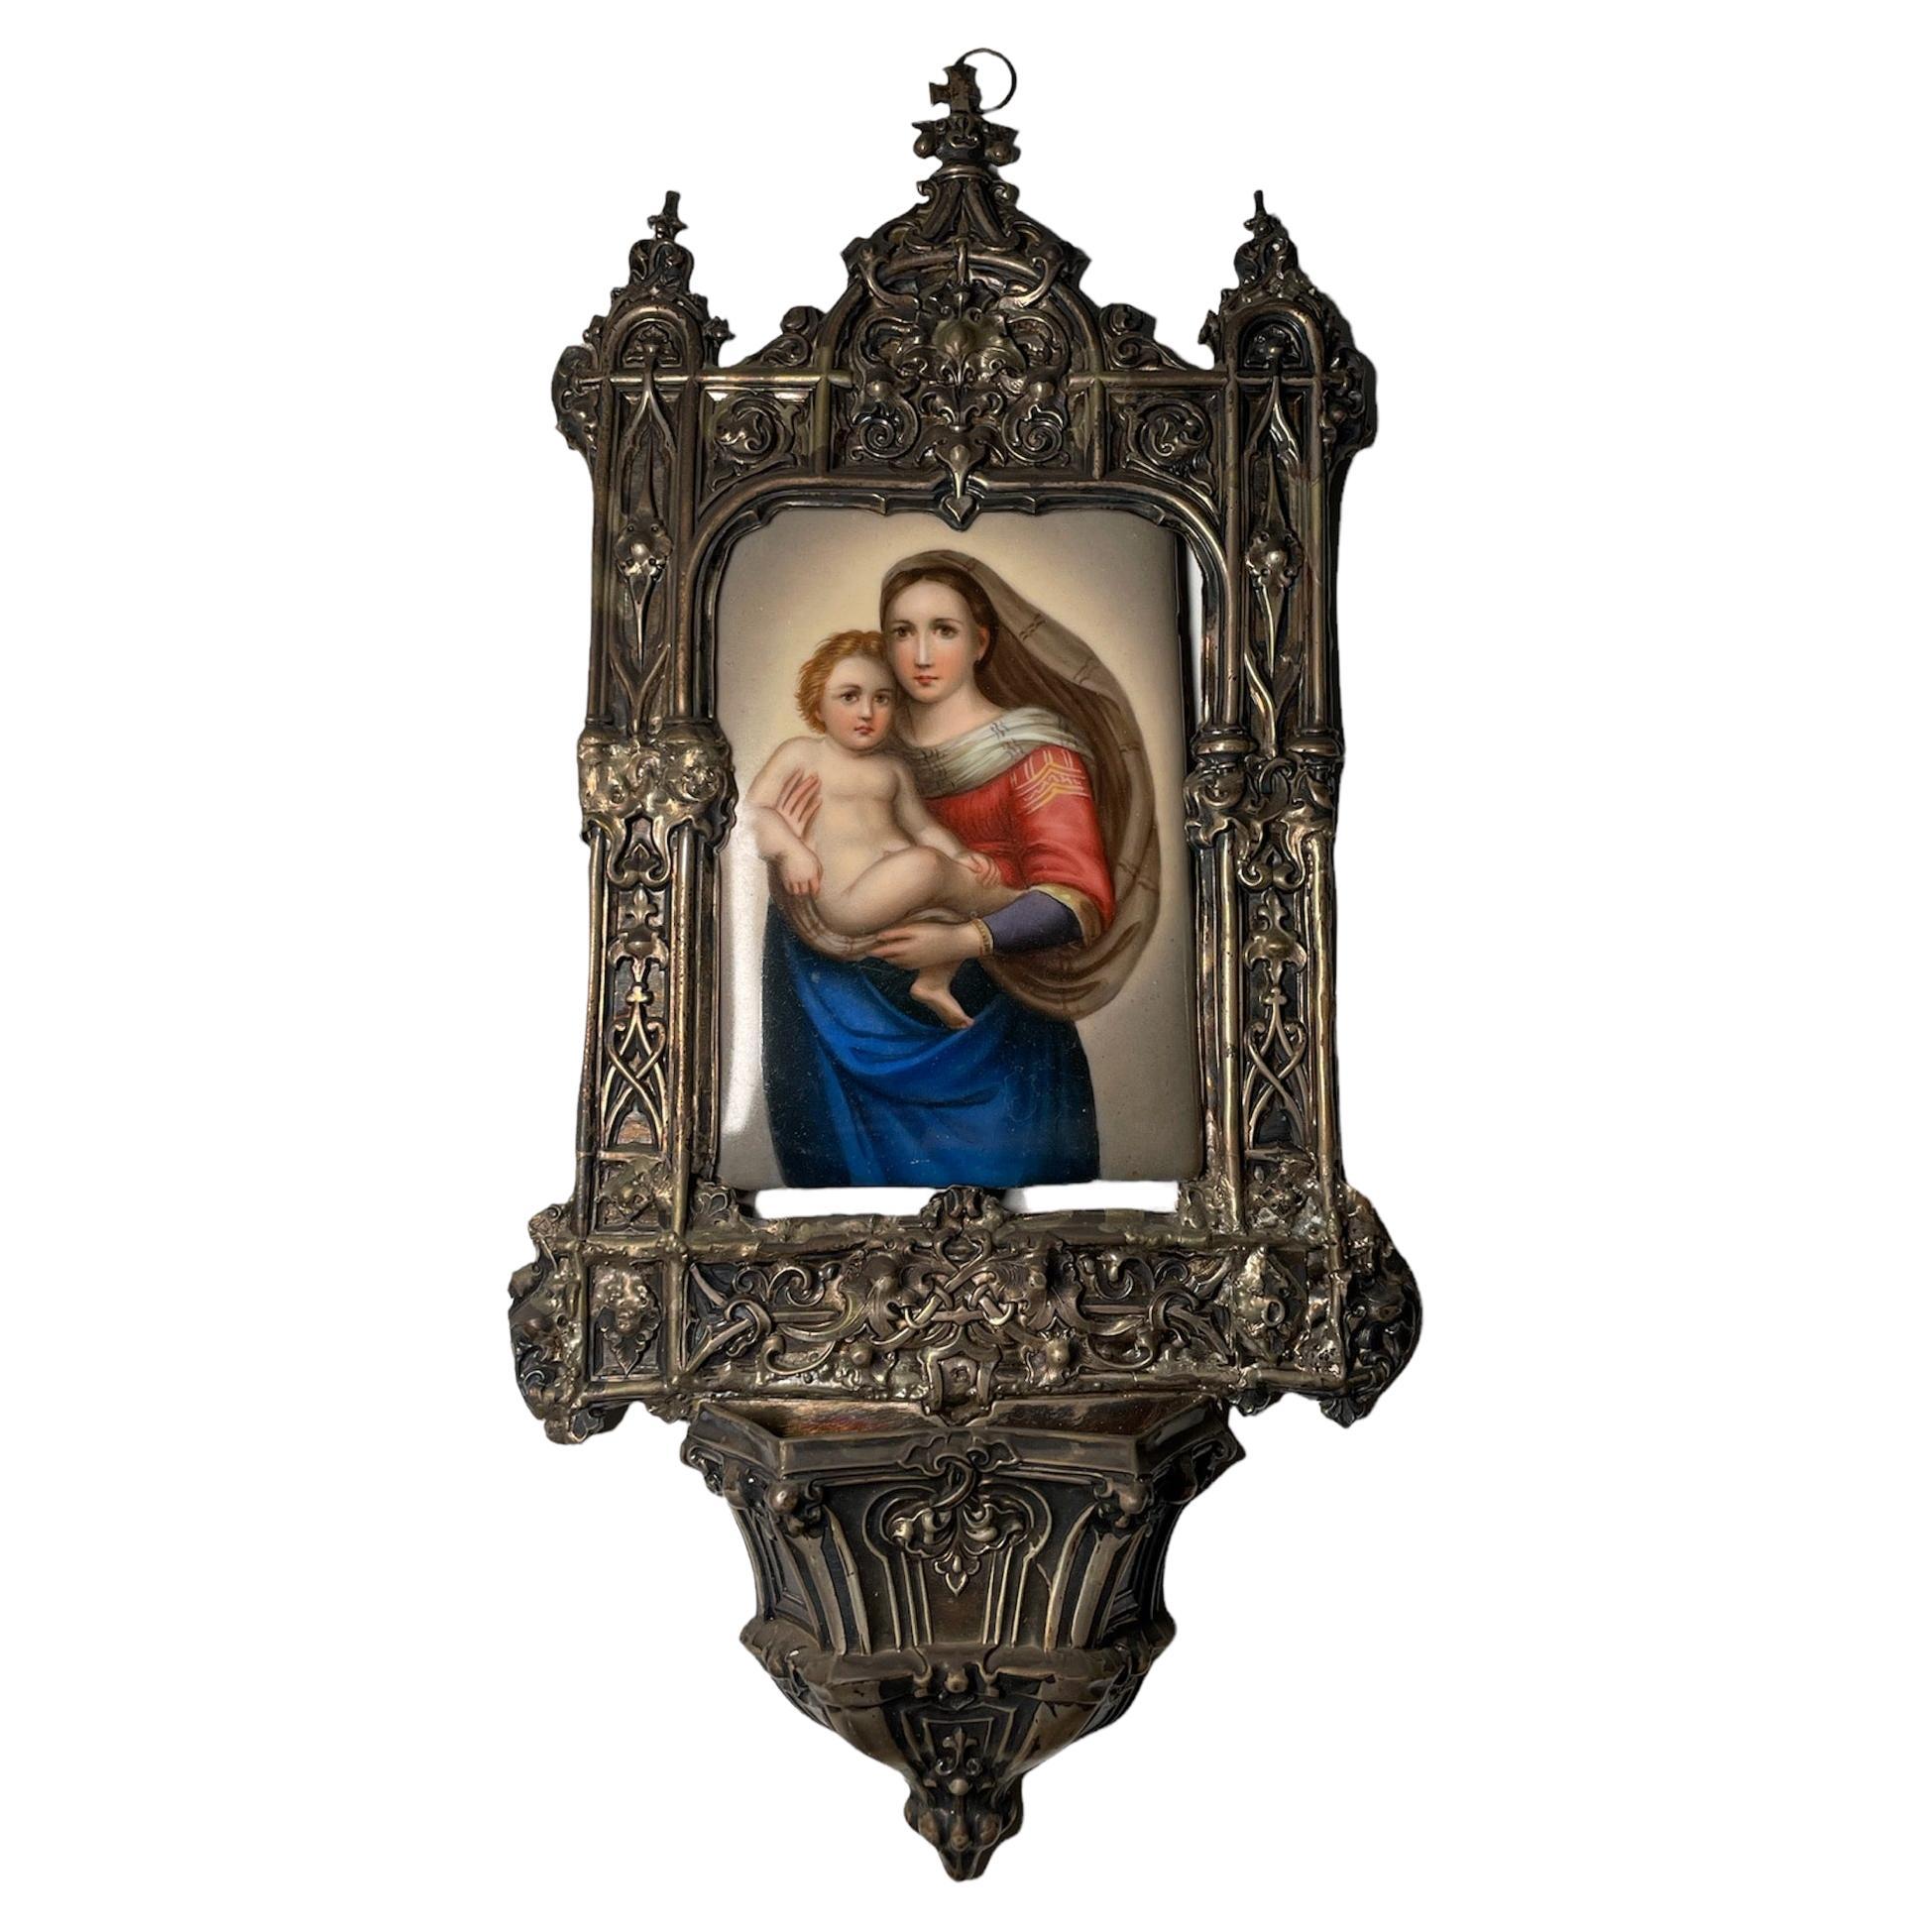 Wandteppich Holy Water Font aus Messing, handbemaltes Porzellan der Sistine Madonna